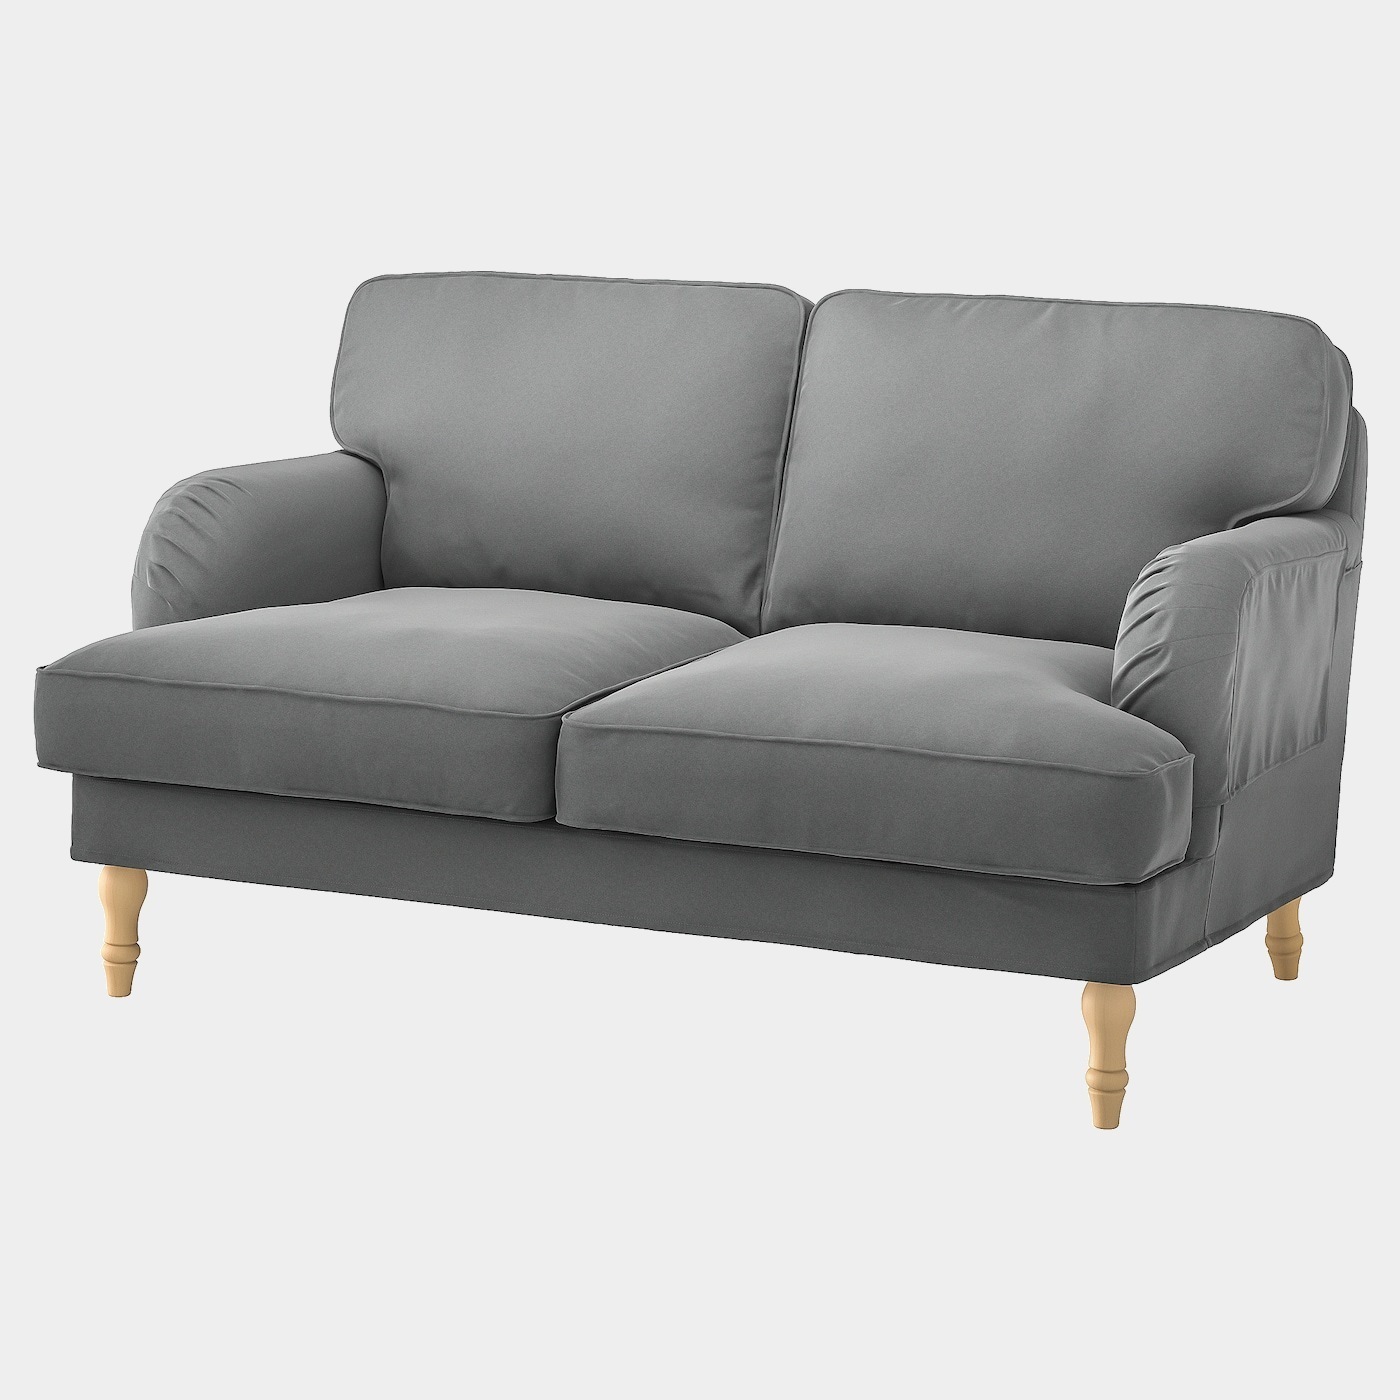 STOCKSUND Bezug 2er-Sofa  - extra Bezüge - Möbel Ideen für dein Zuhause von Home Trends. Möbel Trends von Social Media Influencer für dein Skandi Zuhause.